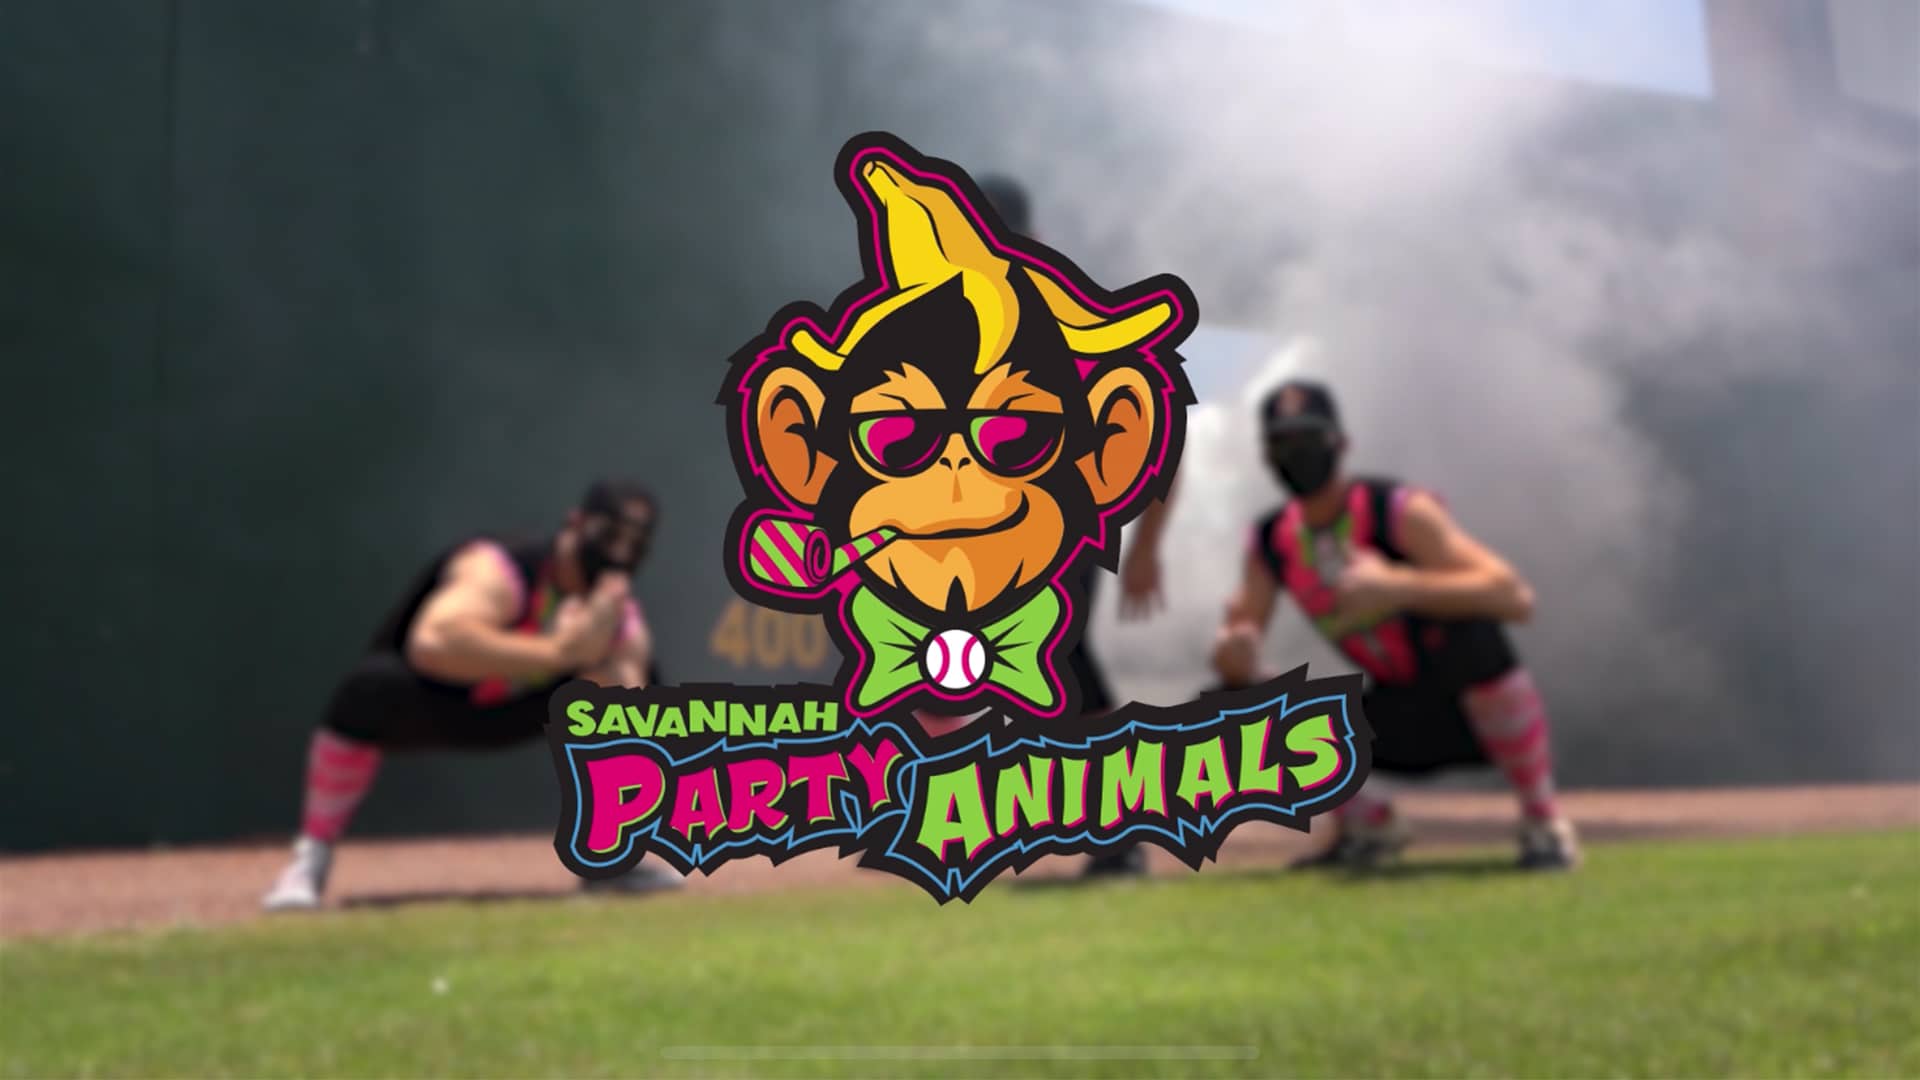 Introducing the Savannah Party Animals - The Savannah Bananas